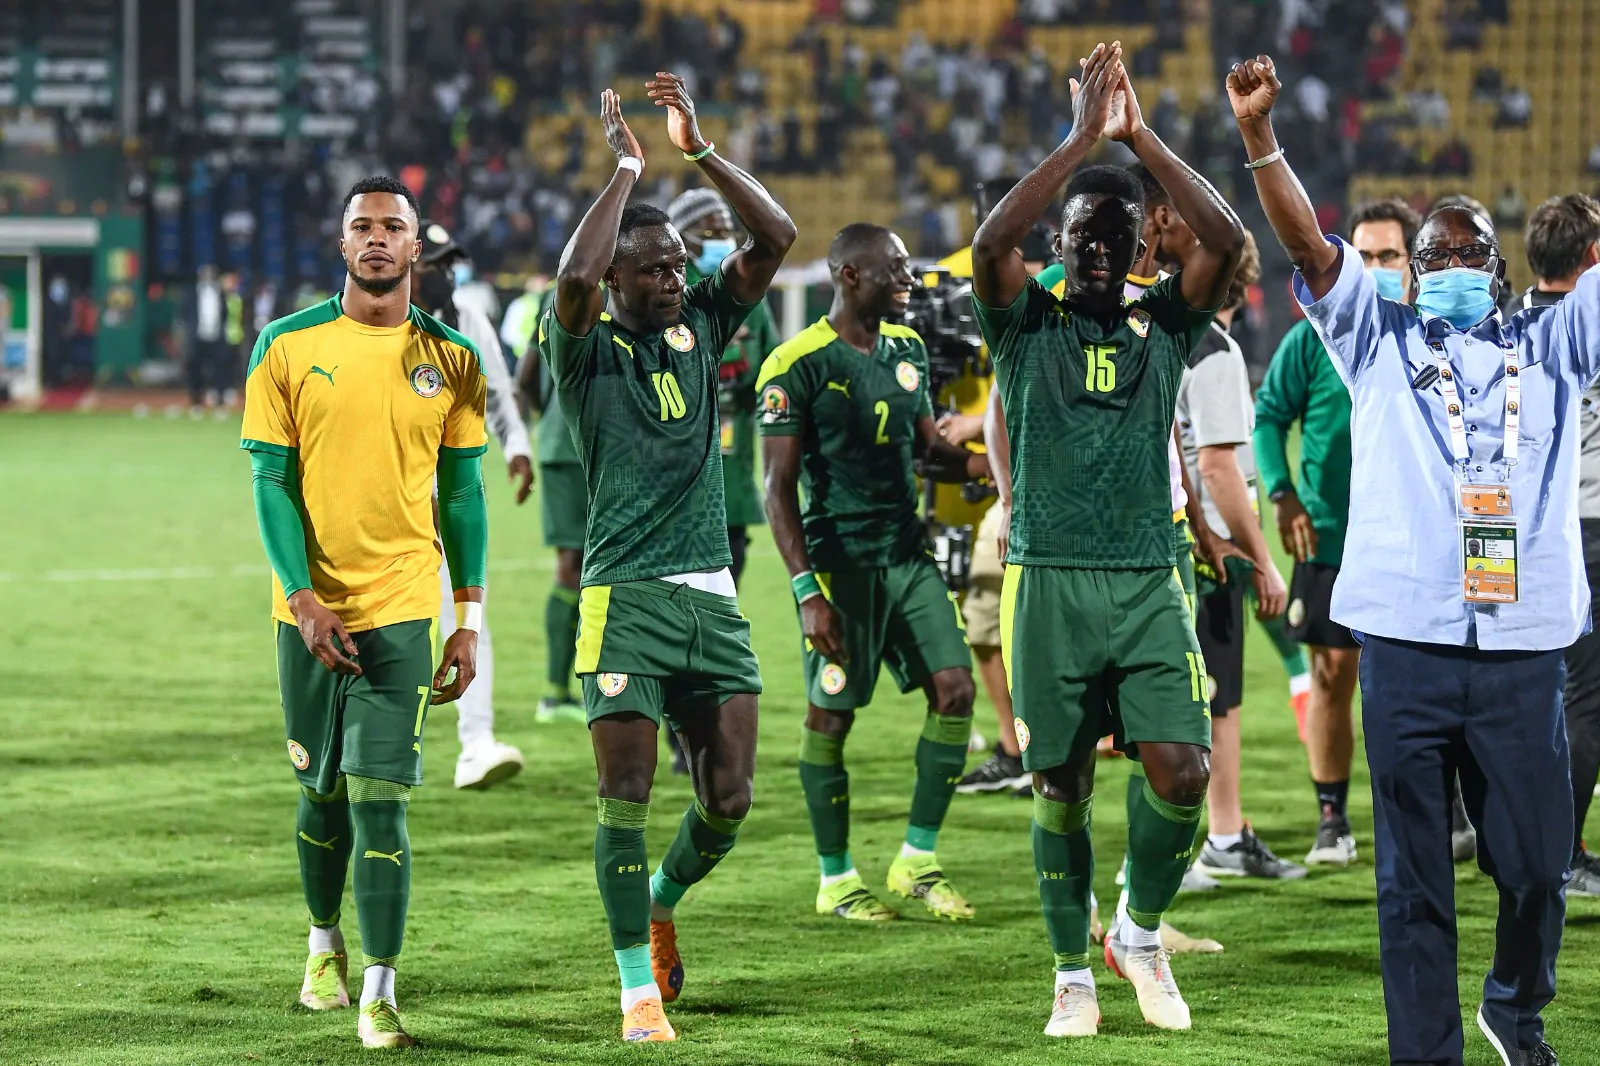 Niente Mondiali, il messaggio del calciatore: “Sarò il primo tifoso del Senegal”